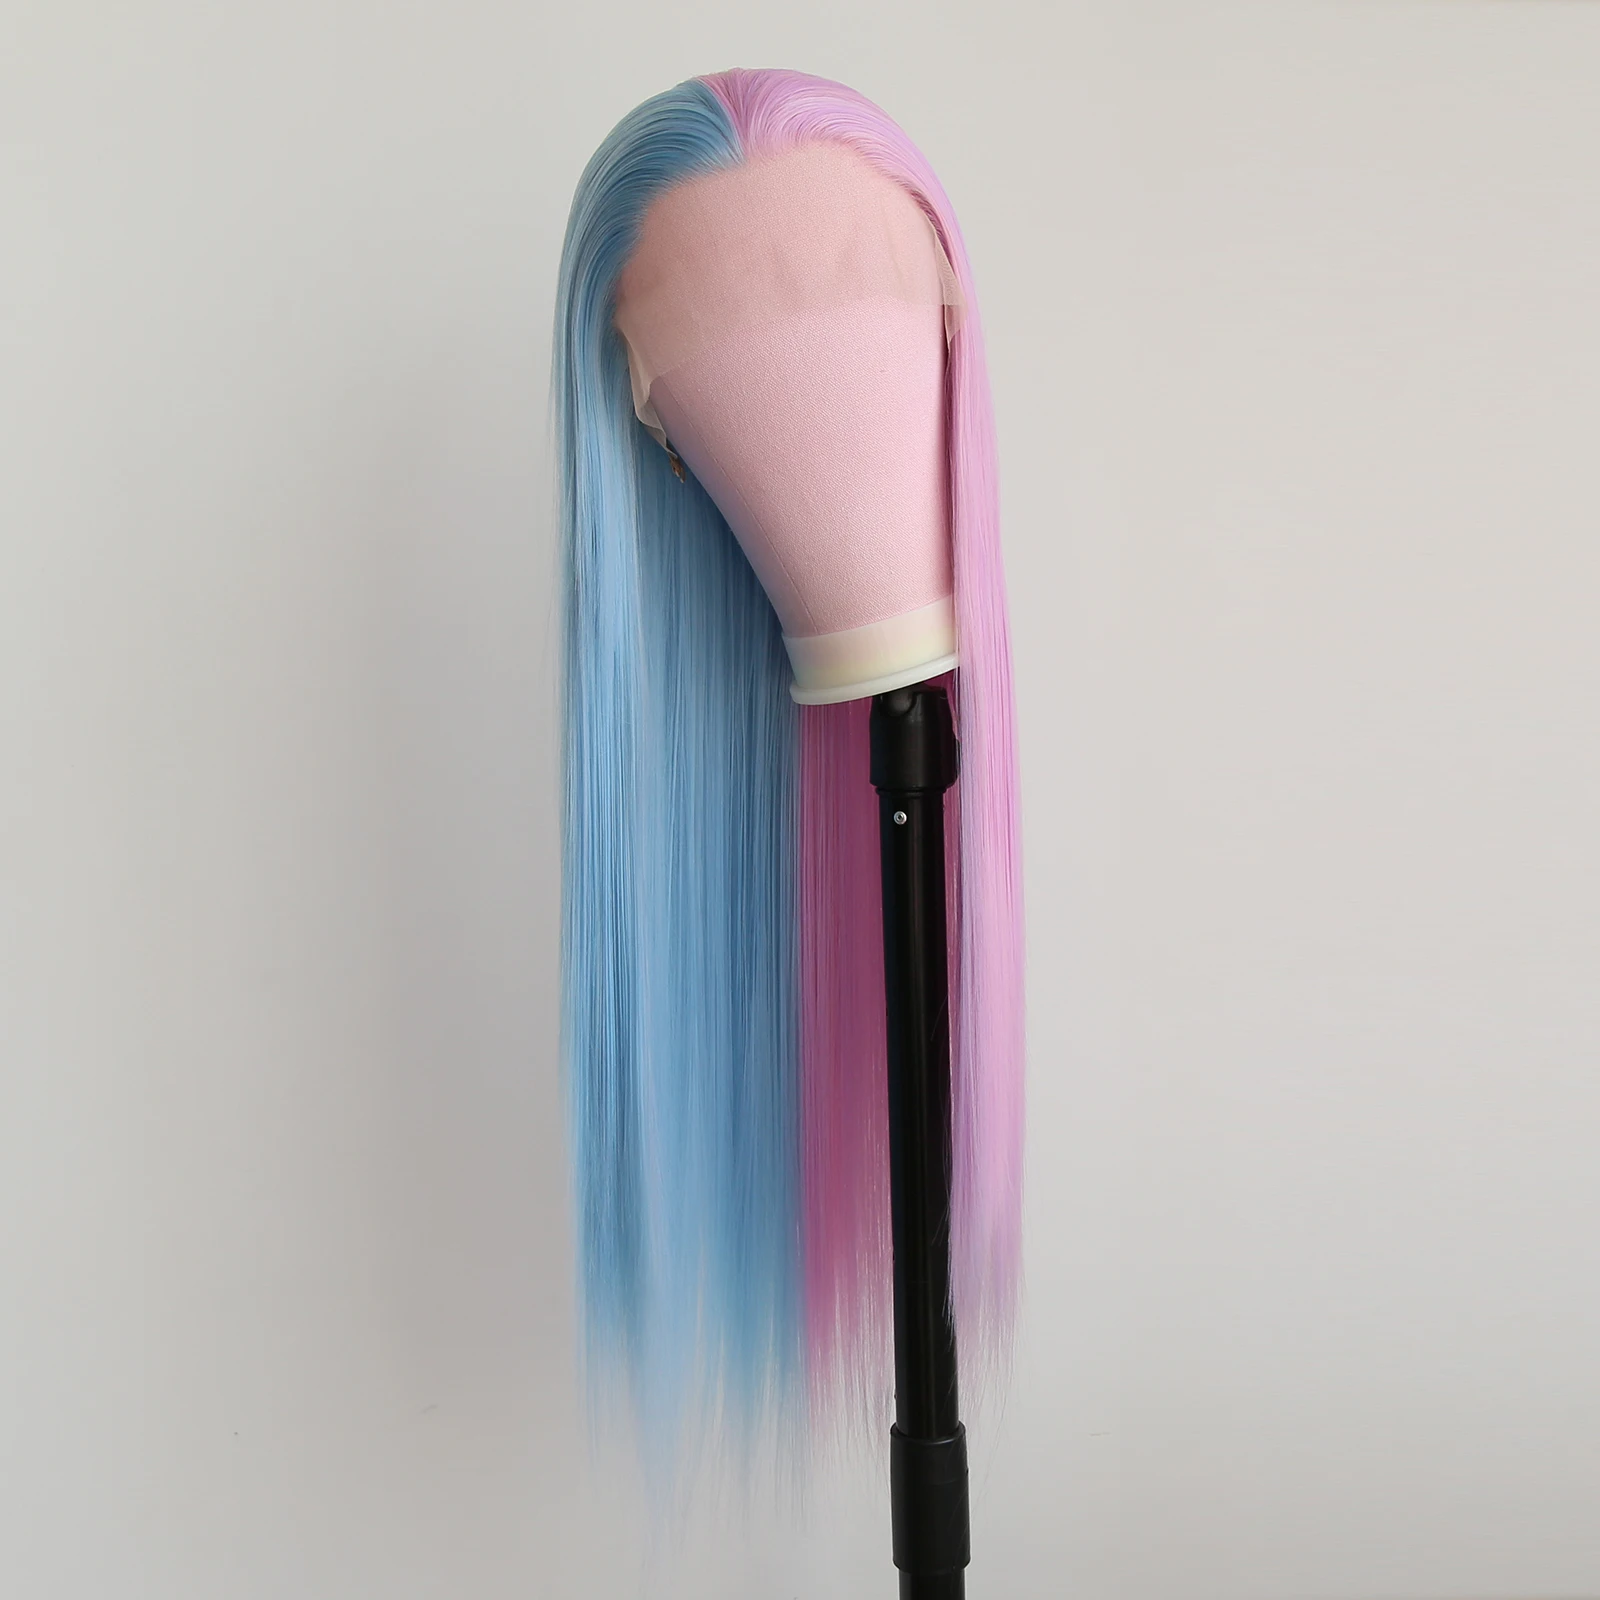 BTWTRY-Peluca de cabello sintético con malla frontal para mujer, color morado, rosa y azul claro, colores variados